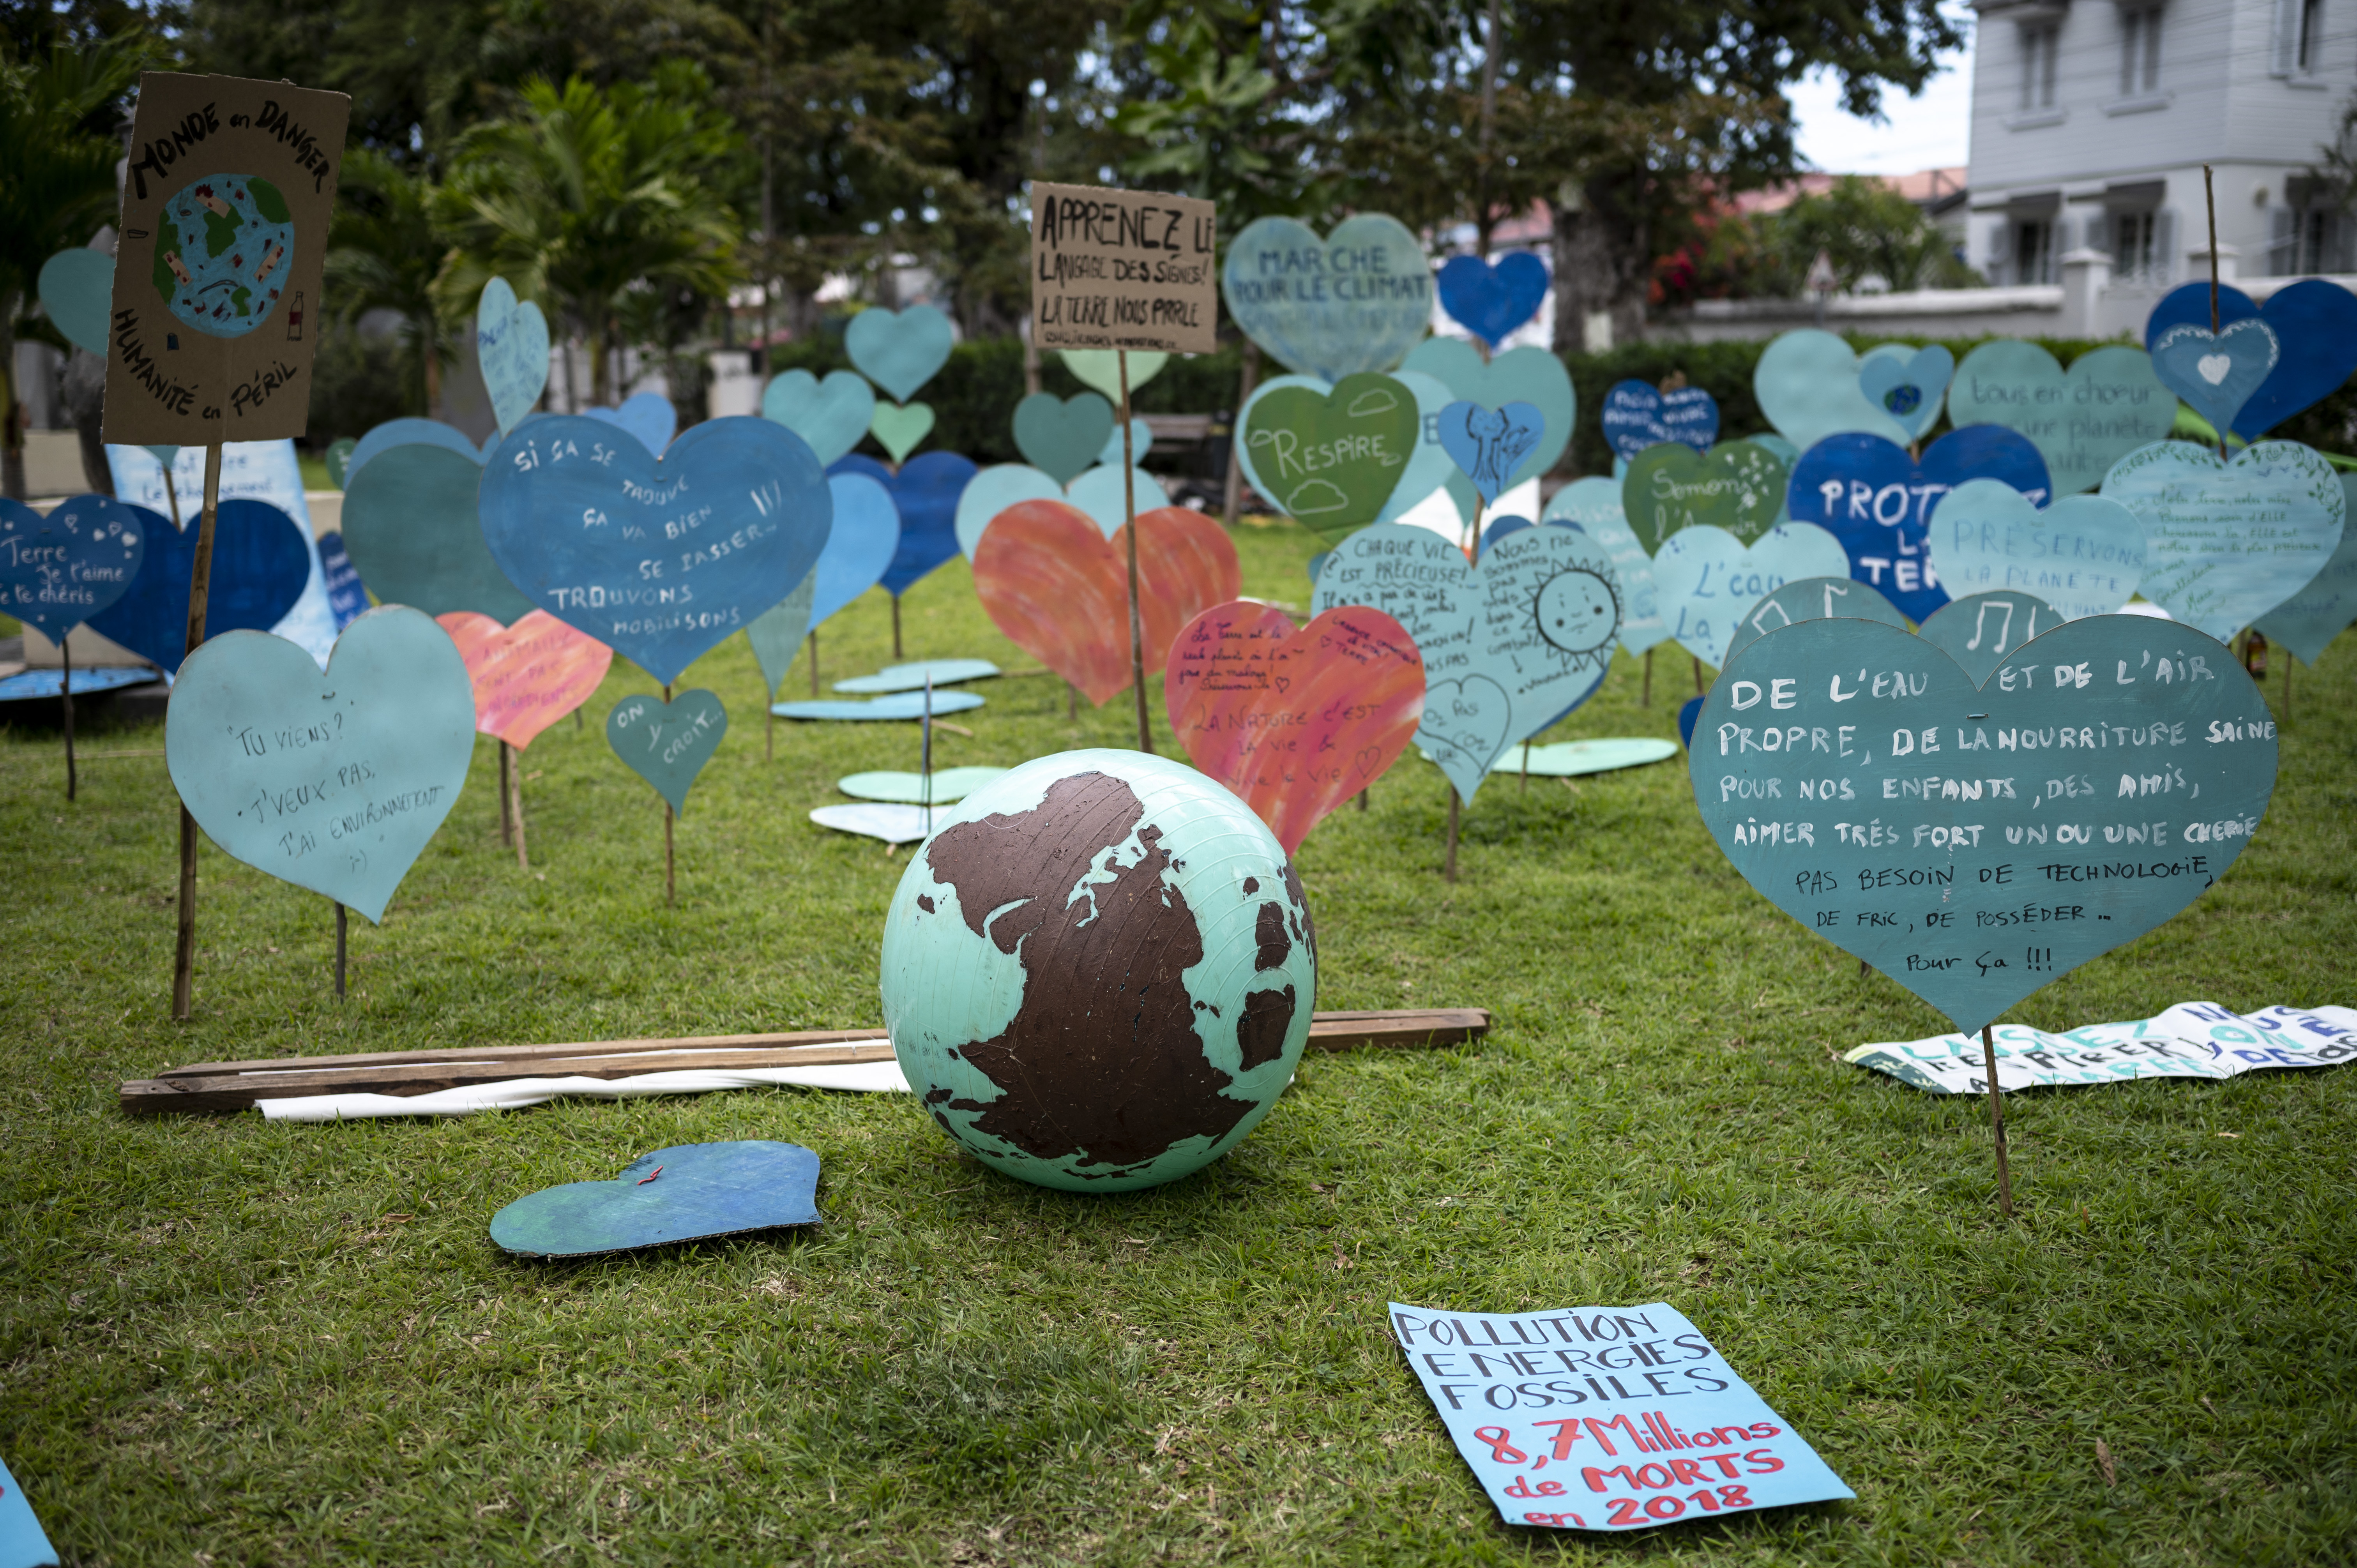 Saint-Paul, Reunion szigete, 2021. szeptember 25. A Föld felé áradó szeretet üzenetei a szigeten tartott, klímaváltozás elleni tüntetés részeként. A szigeten mintegy kétszázan gyűltek össze az IPCC legutóbbi, augusztus elején közzétett klímajelentését követően. A résztvevők igyekeztek az ökoszorongást kifejező, ugyanakkor pozitív üzeneteket közvetíteni.